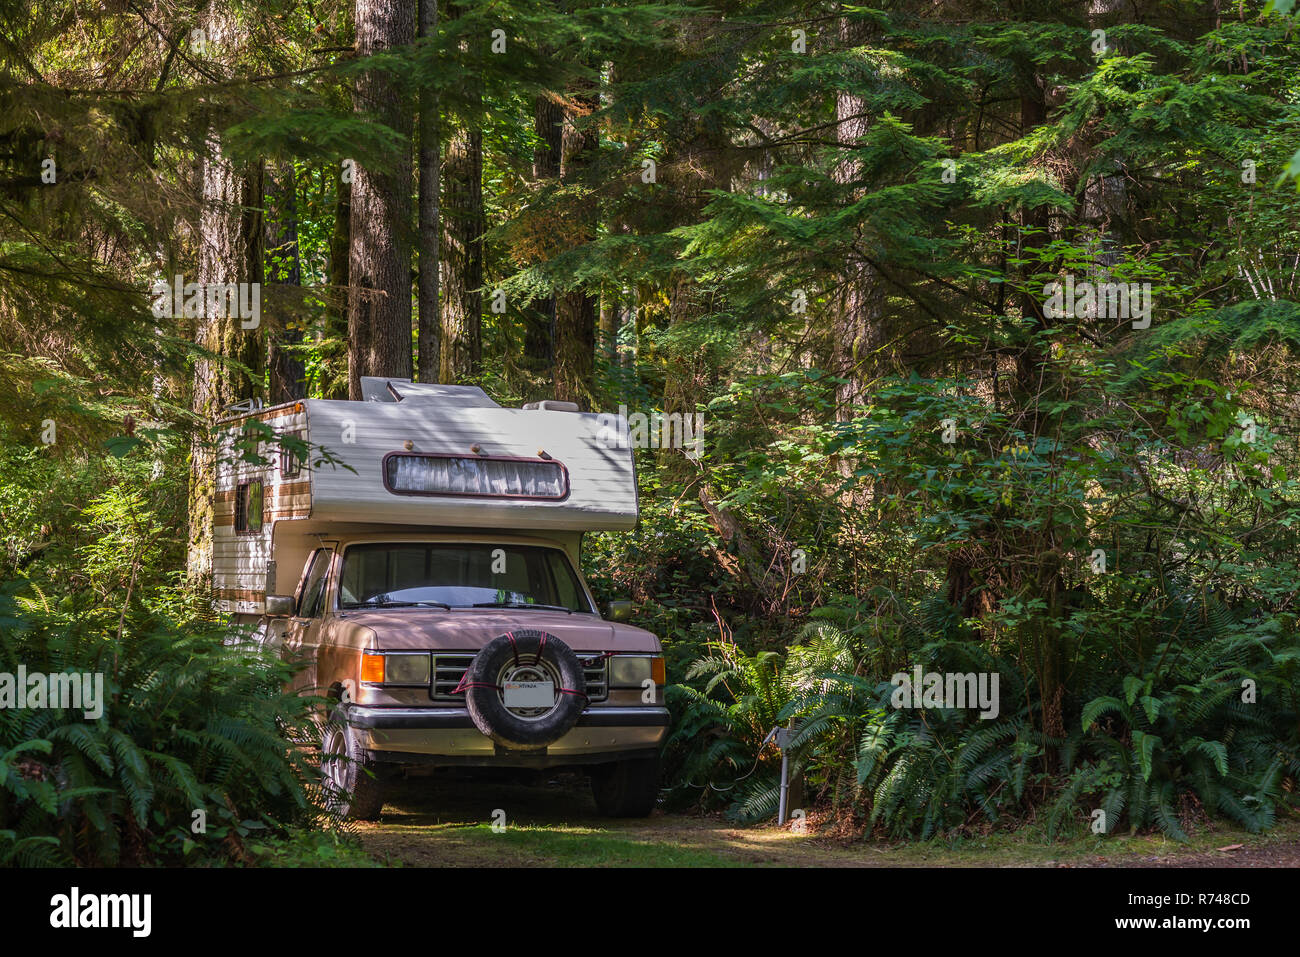 Le camping-car garé sur piste en forêt, Quadra Island, Campbell River, Canada Banque D'Images